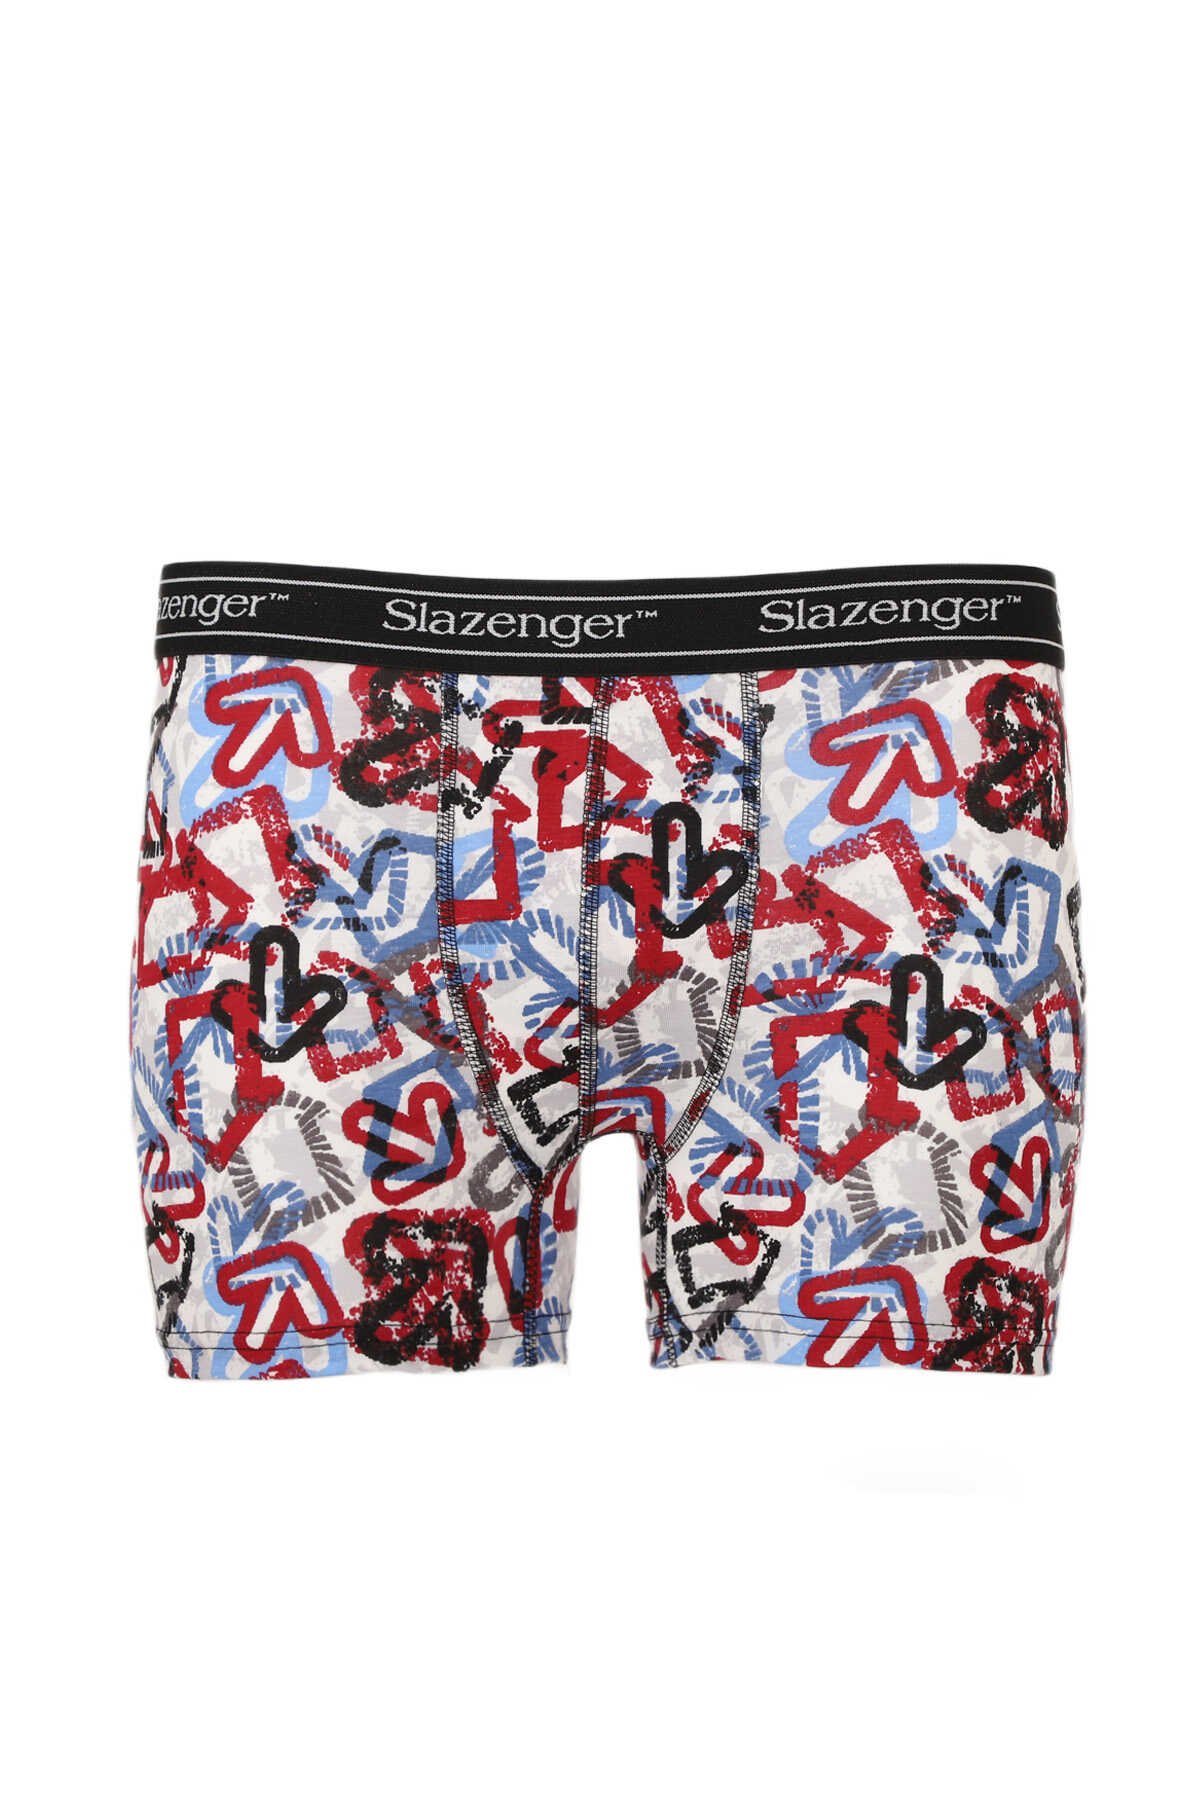 Slazenger - Slazenger JAMA Erkek Boxer İç Giyim Beyaz / Kırmızı